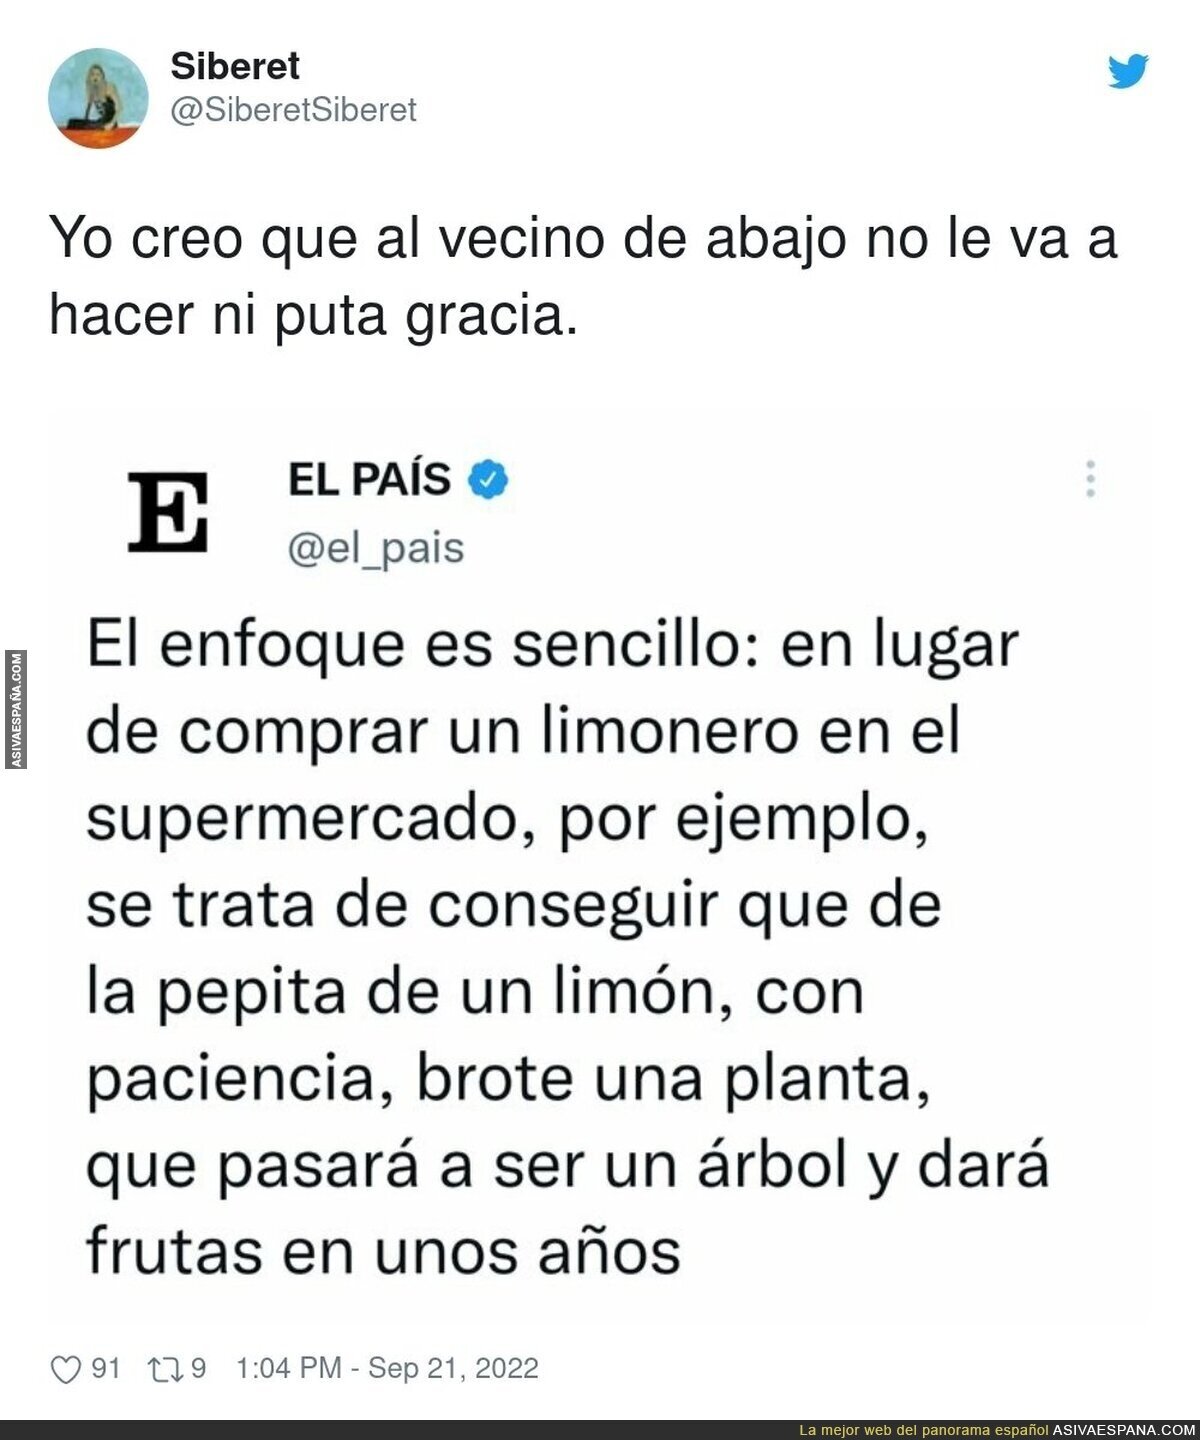 La tendencia que quiere que sigamos en 'El País'